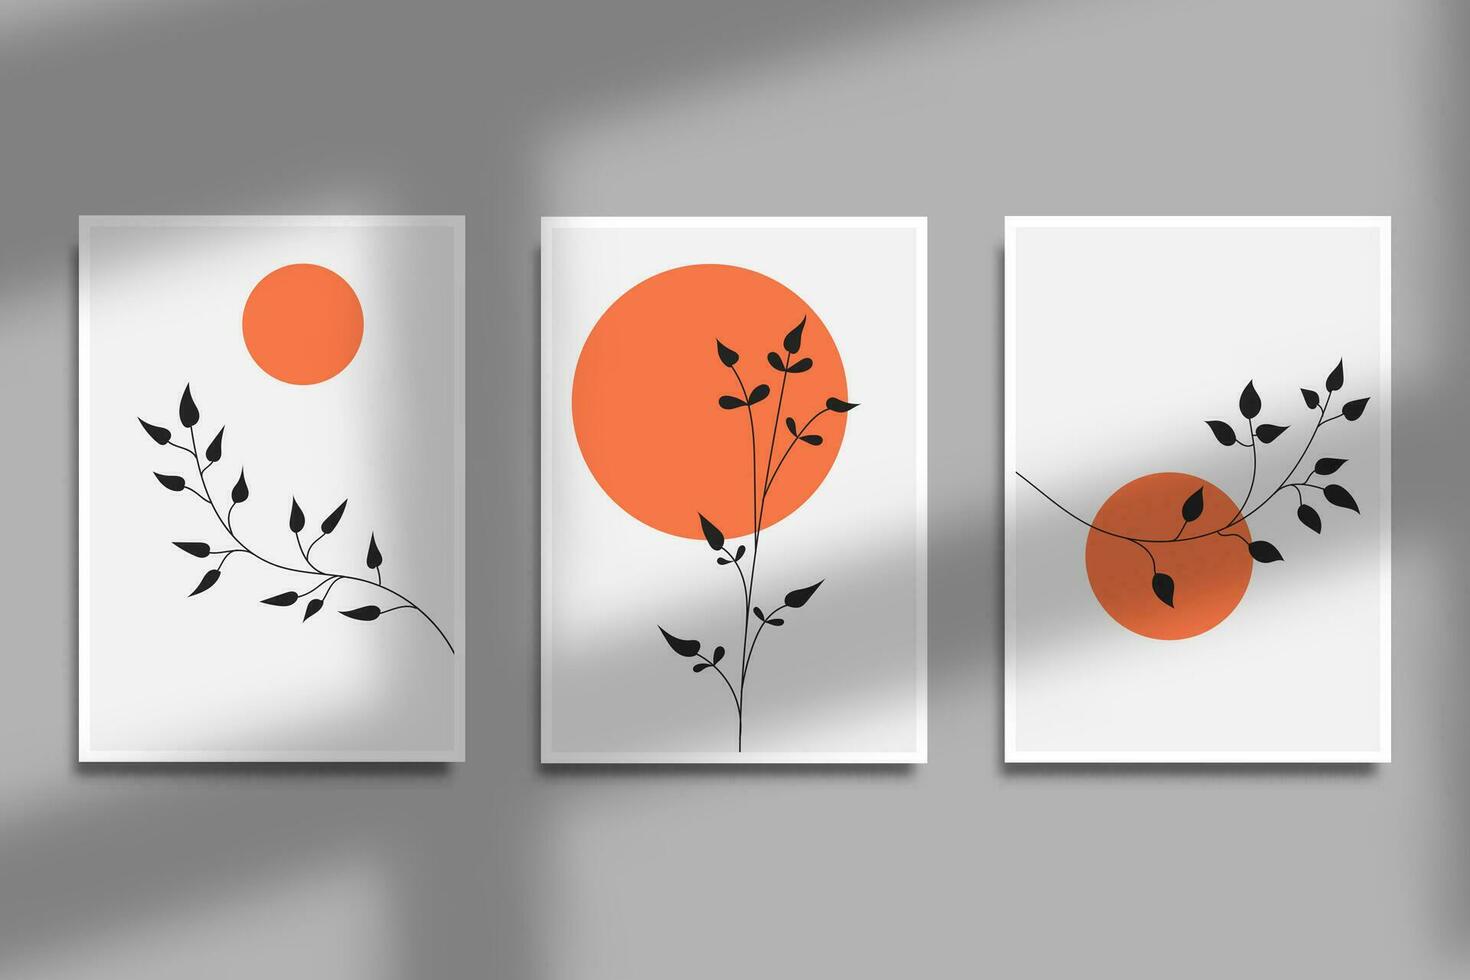 abstract modern minimalistische botanisch met zon illustratie voor muur kunst decoratie vector